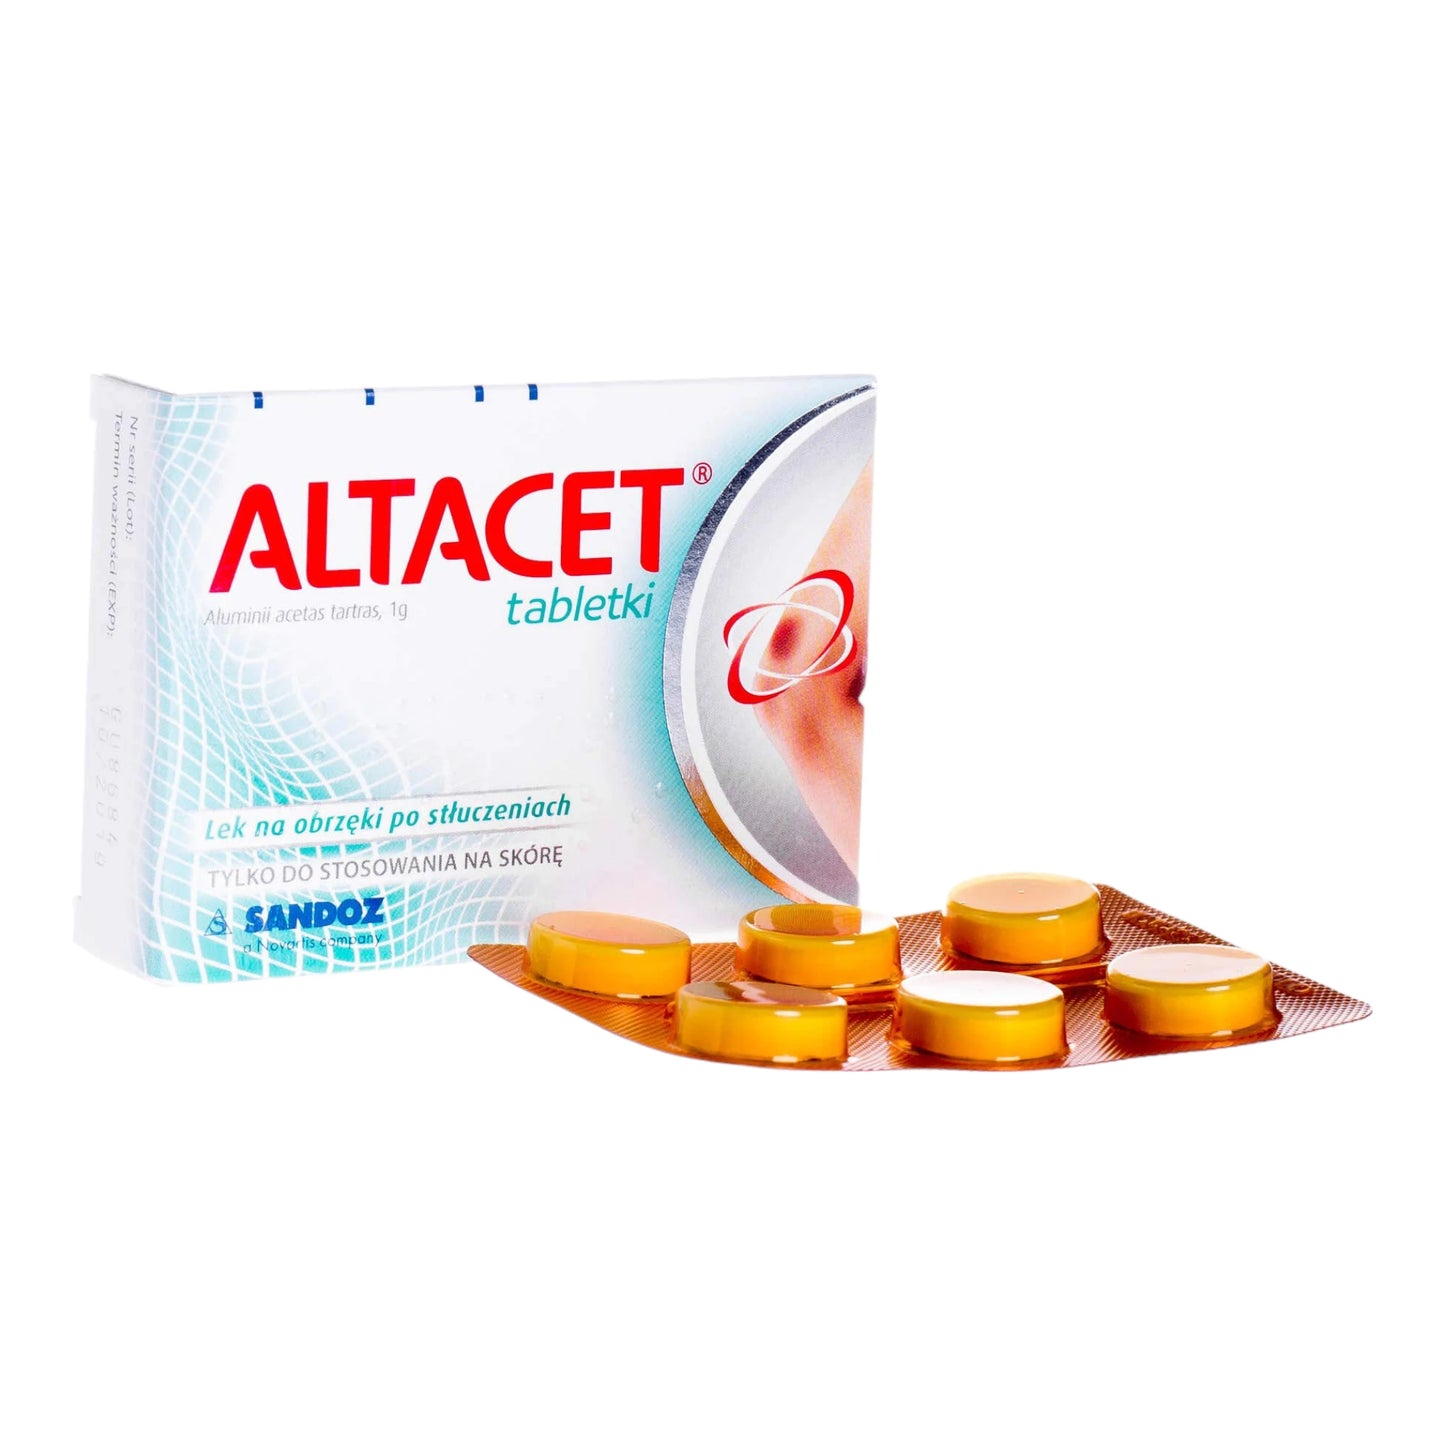 Altacet tablets